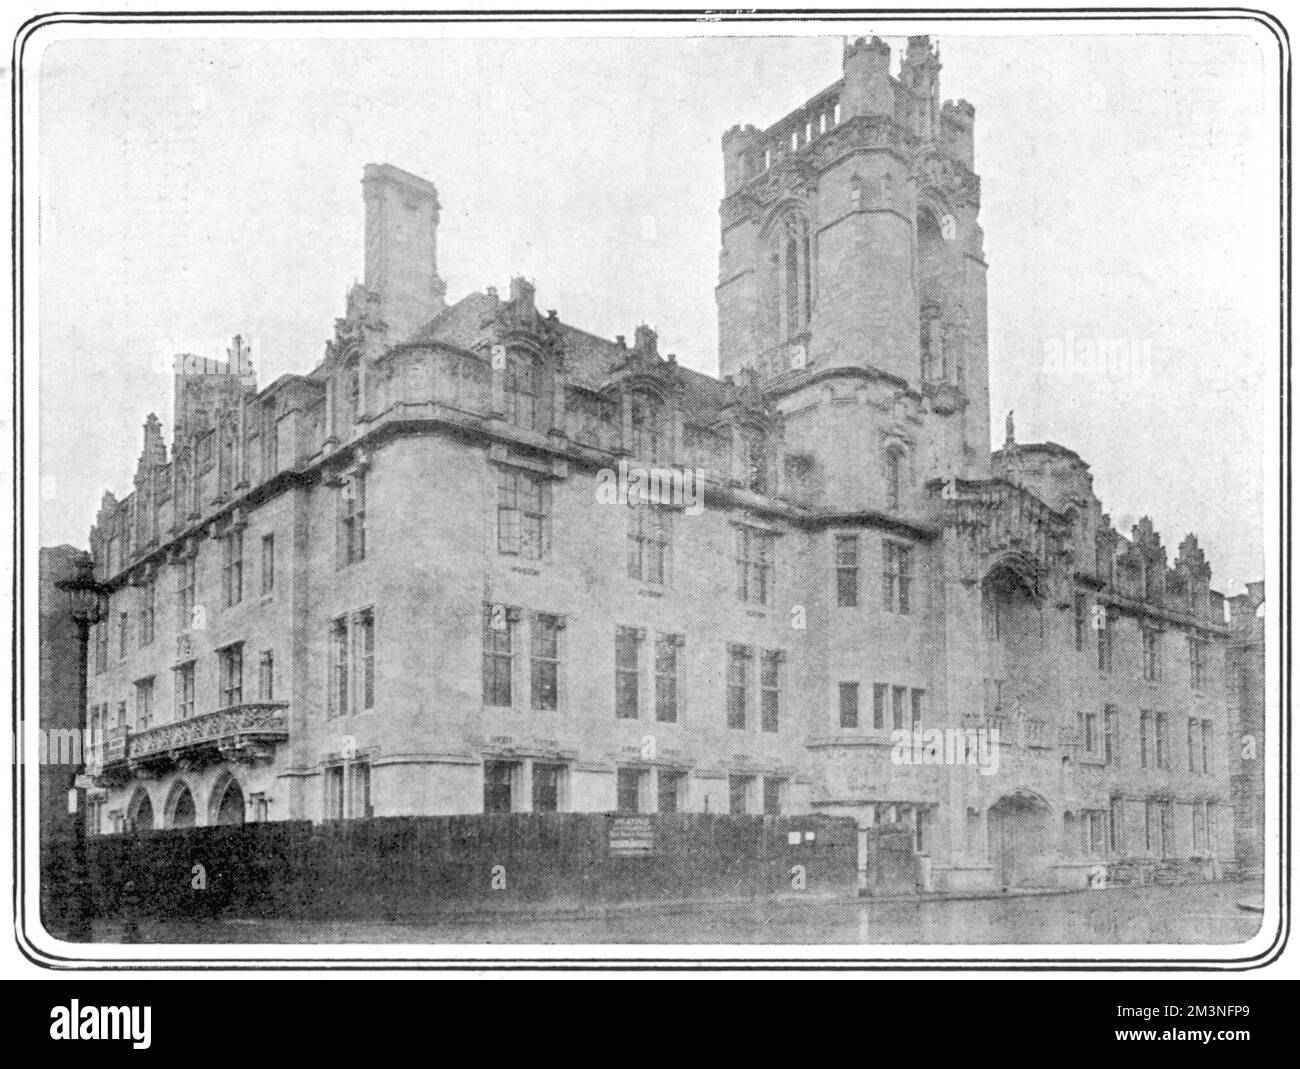 Middlesex Guildhall an der südwestlichen Ecke des Parliament Square in London. Das zwischen 1906 und 1913 erbaute Gebäude wurde 2007 wegen Renovierungsarbeiten geschlossen, um den Standort des neuen Obersten Gerichtshofs des Vereinigten Königreichs zu errichten. Datum: 1913 Stockfoto